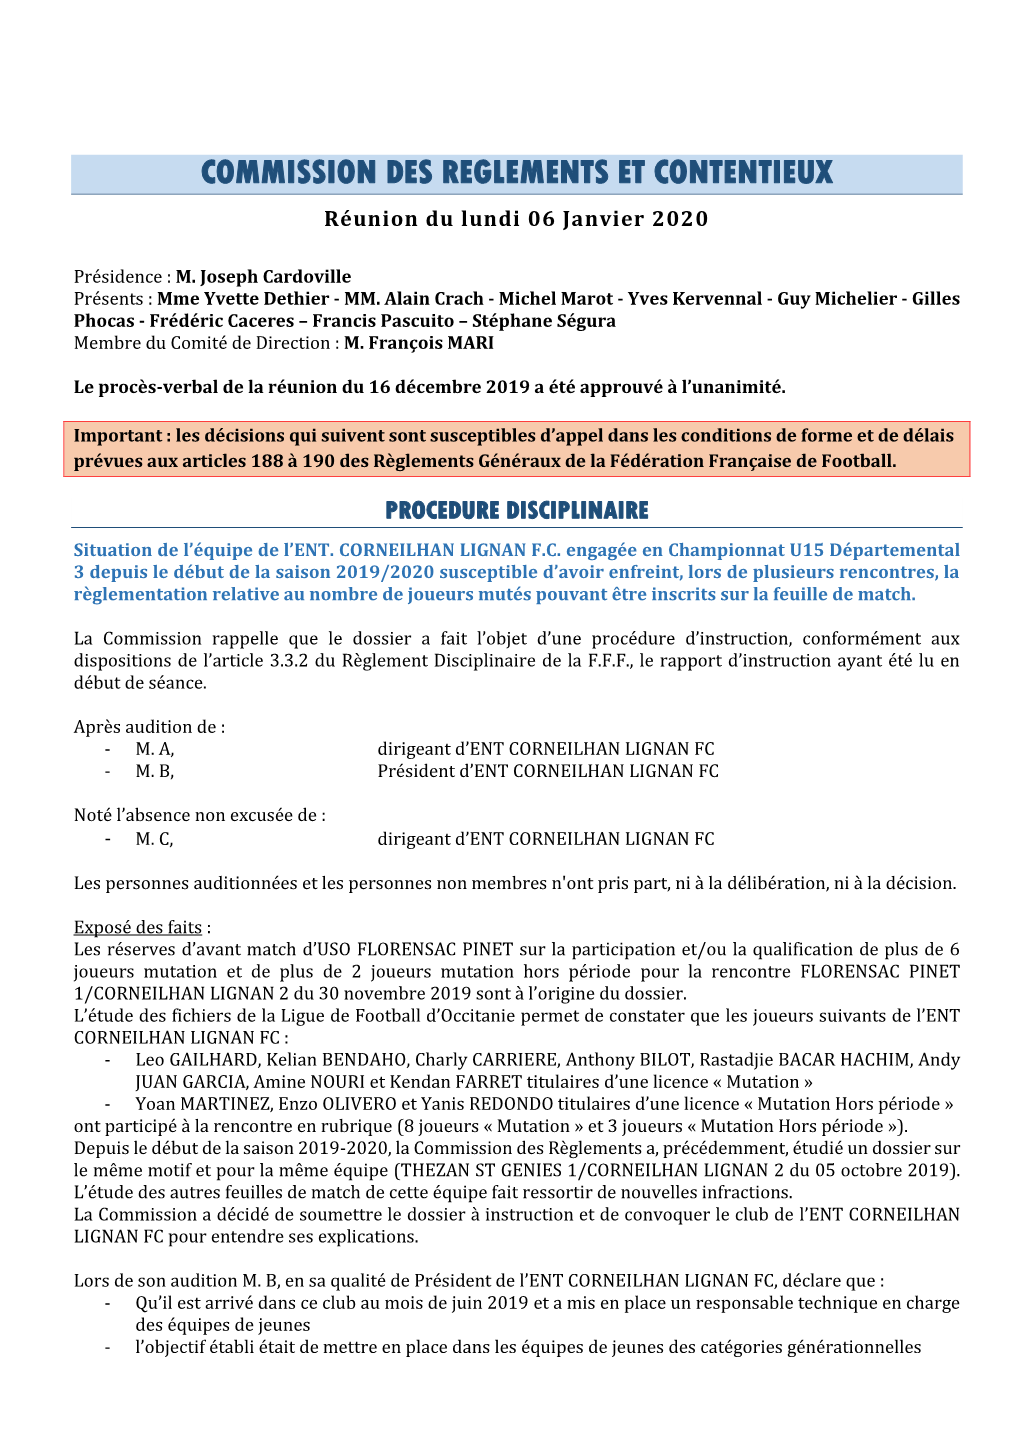 COMMISSION DES REGLEMENTS ET CONTENTIEUX Réunion Du Lundi 06 Janvier 2020